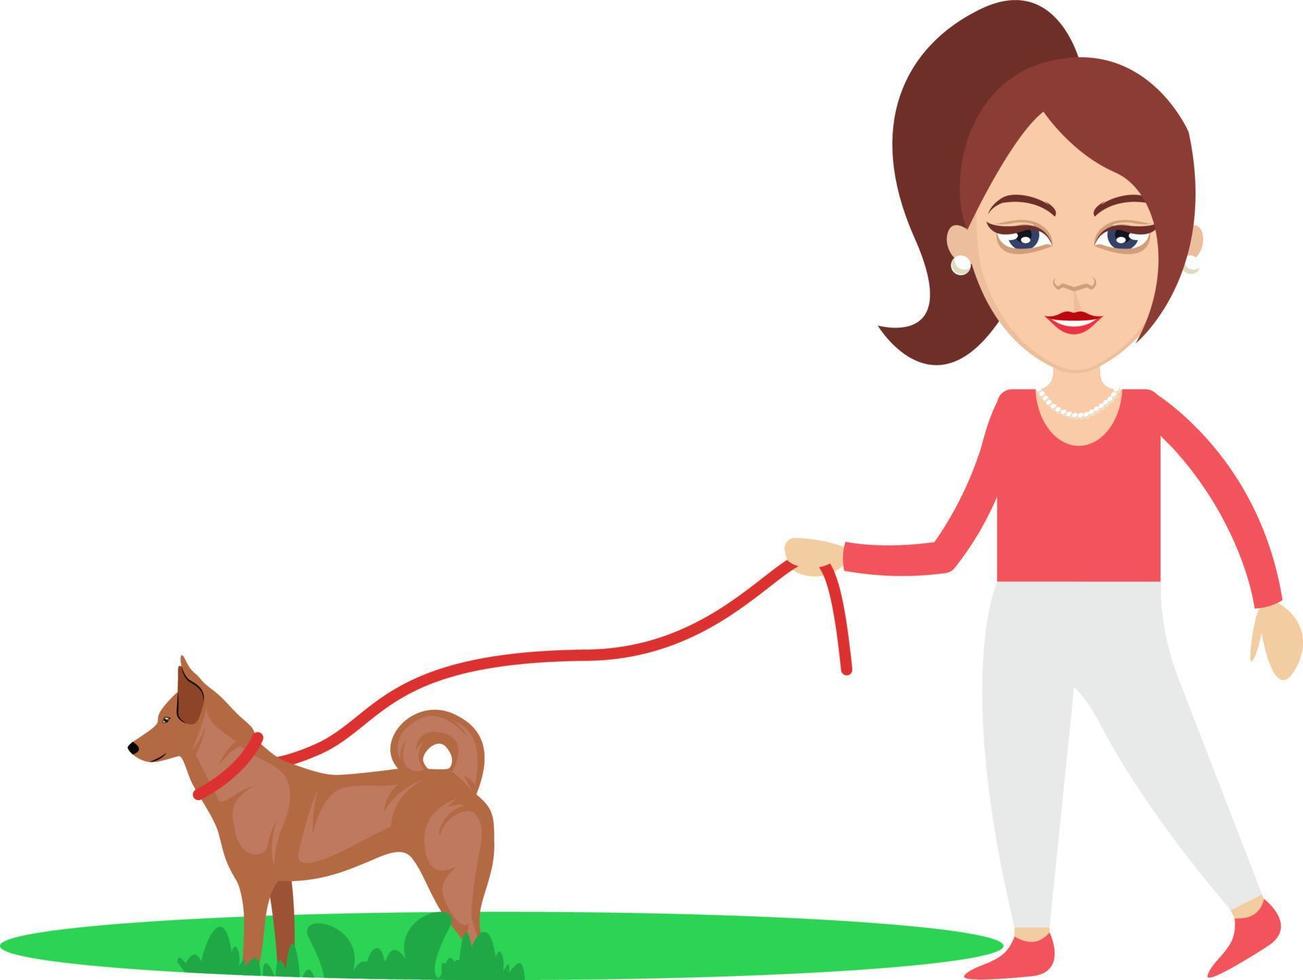 mujer paseando a un perro, ilustración, vector sobre fondo blanco.